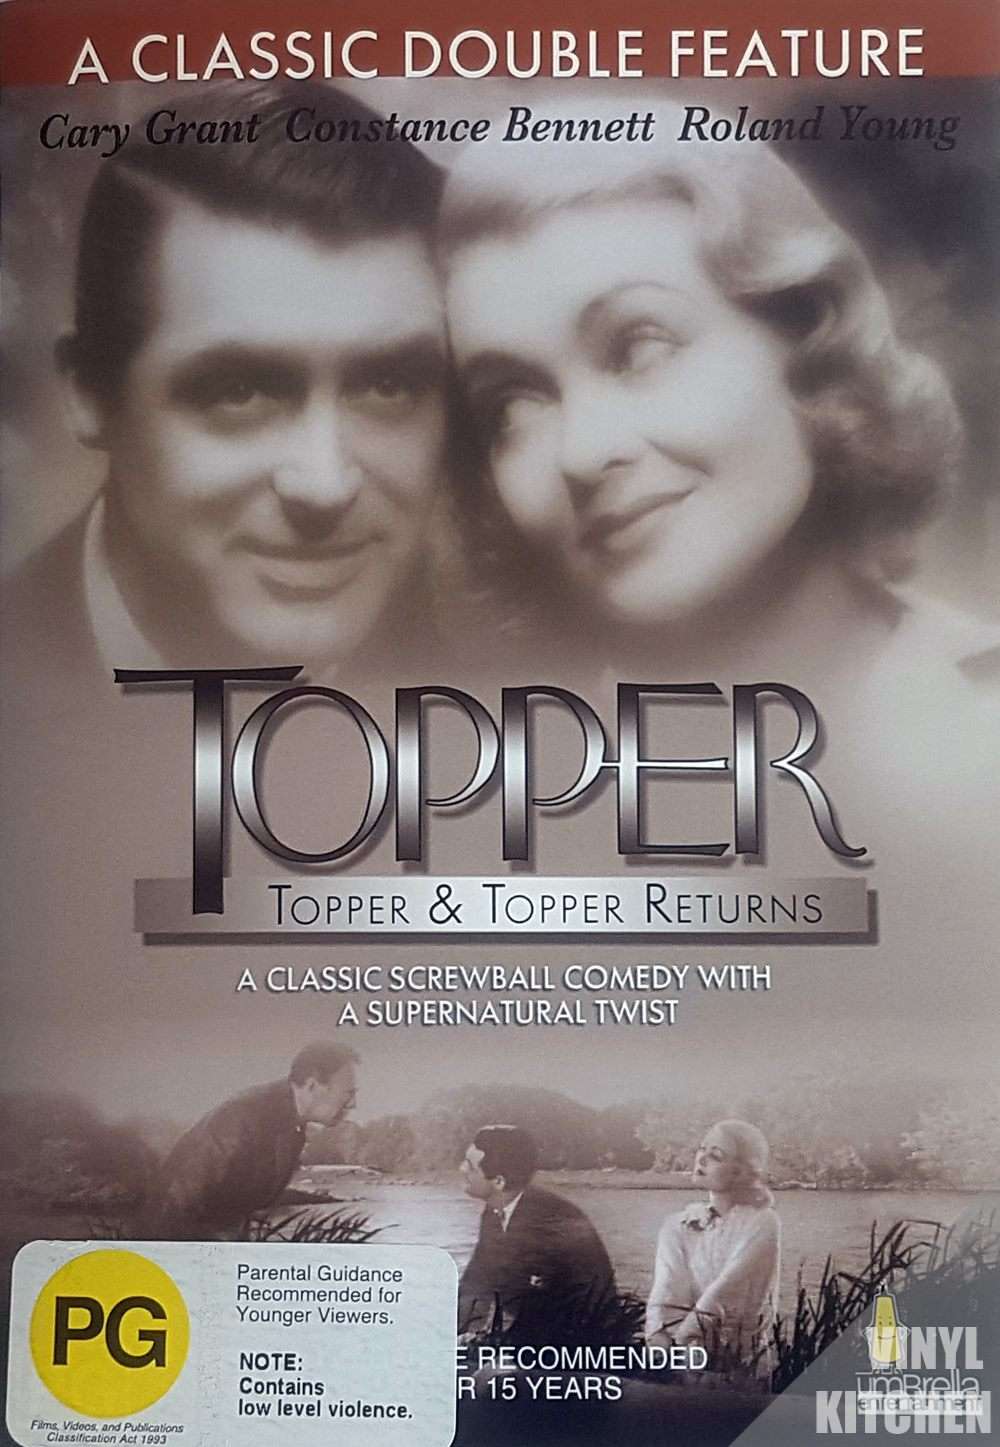 Topper & Topper Returns